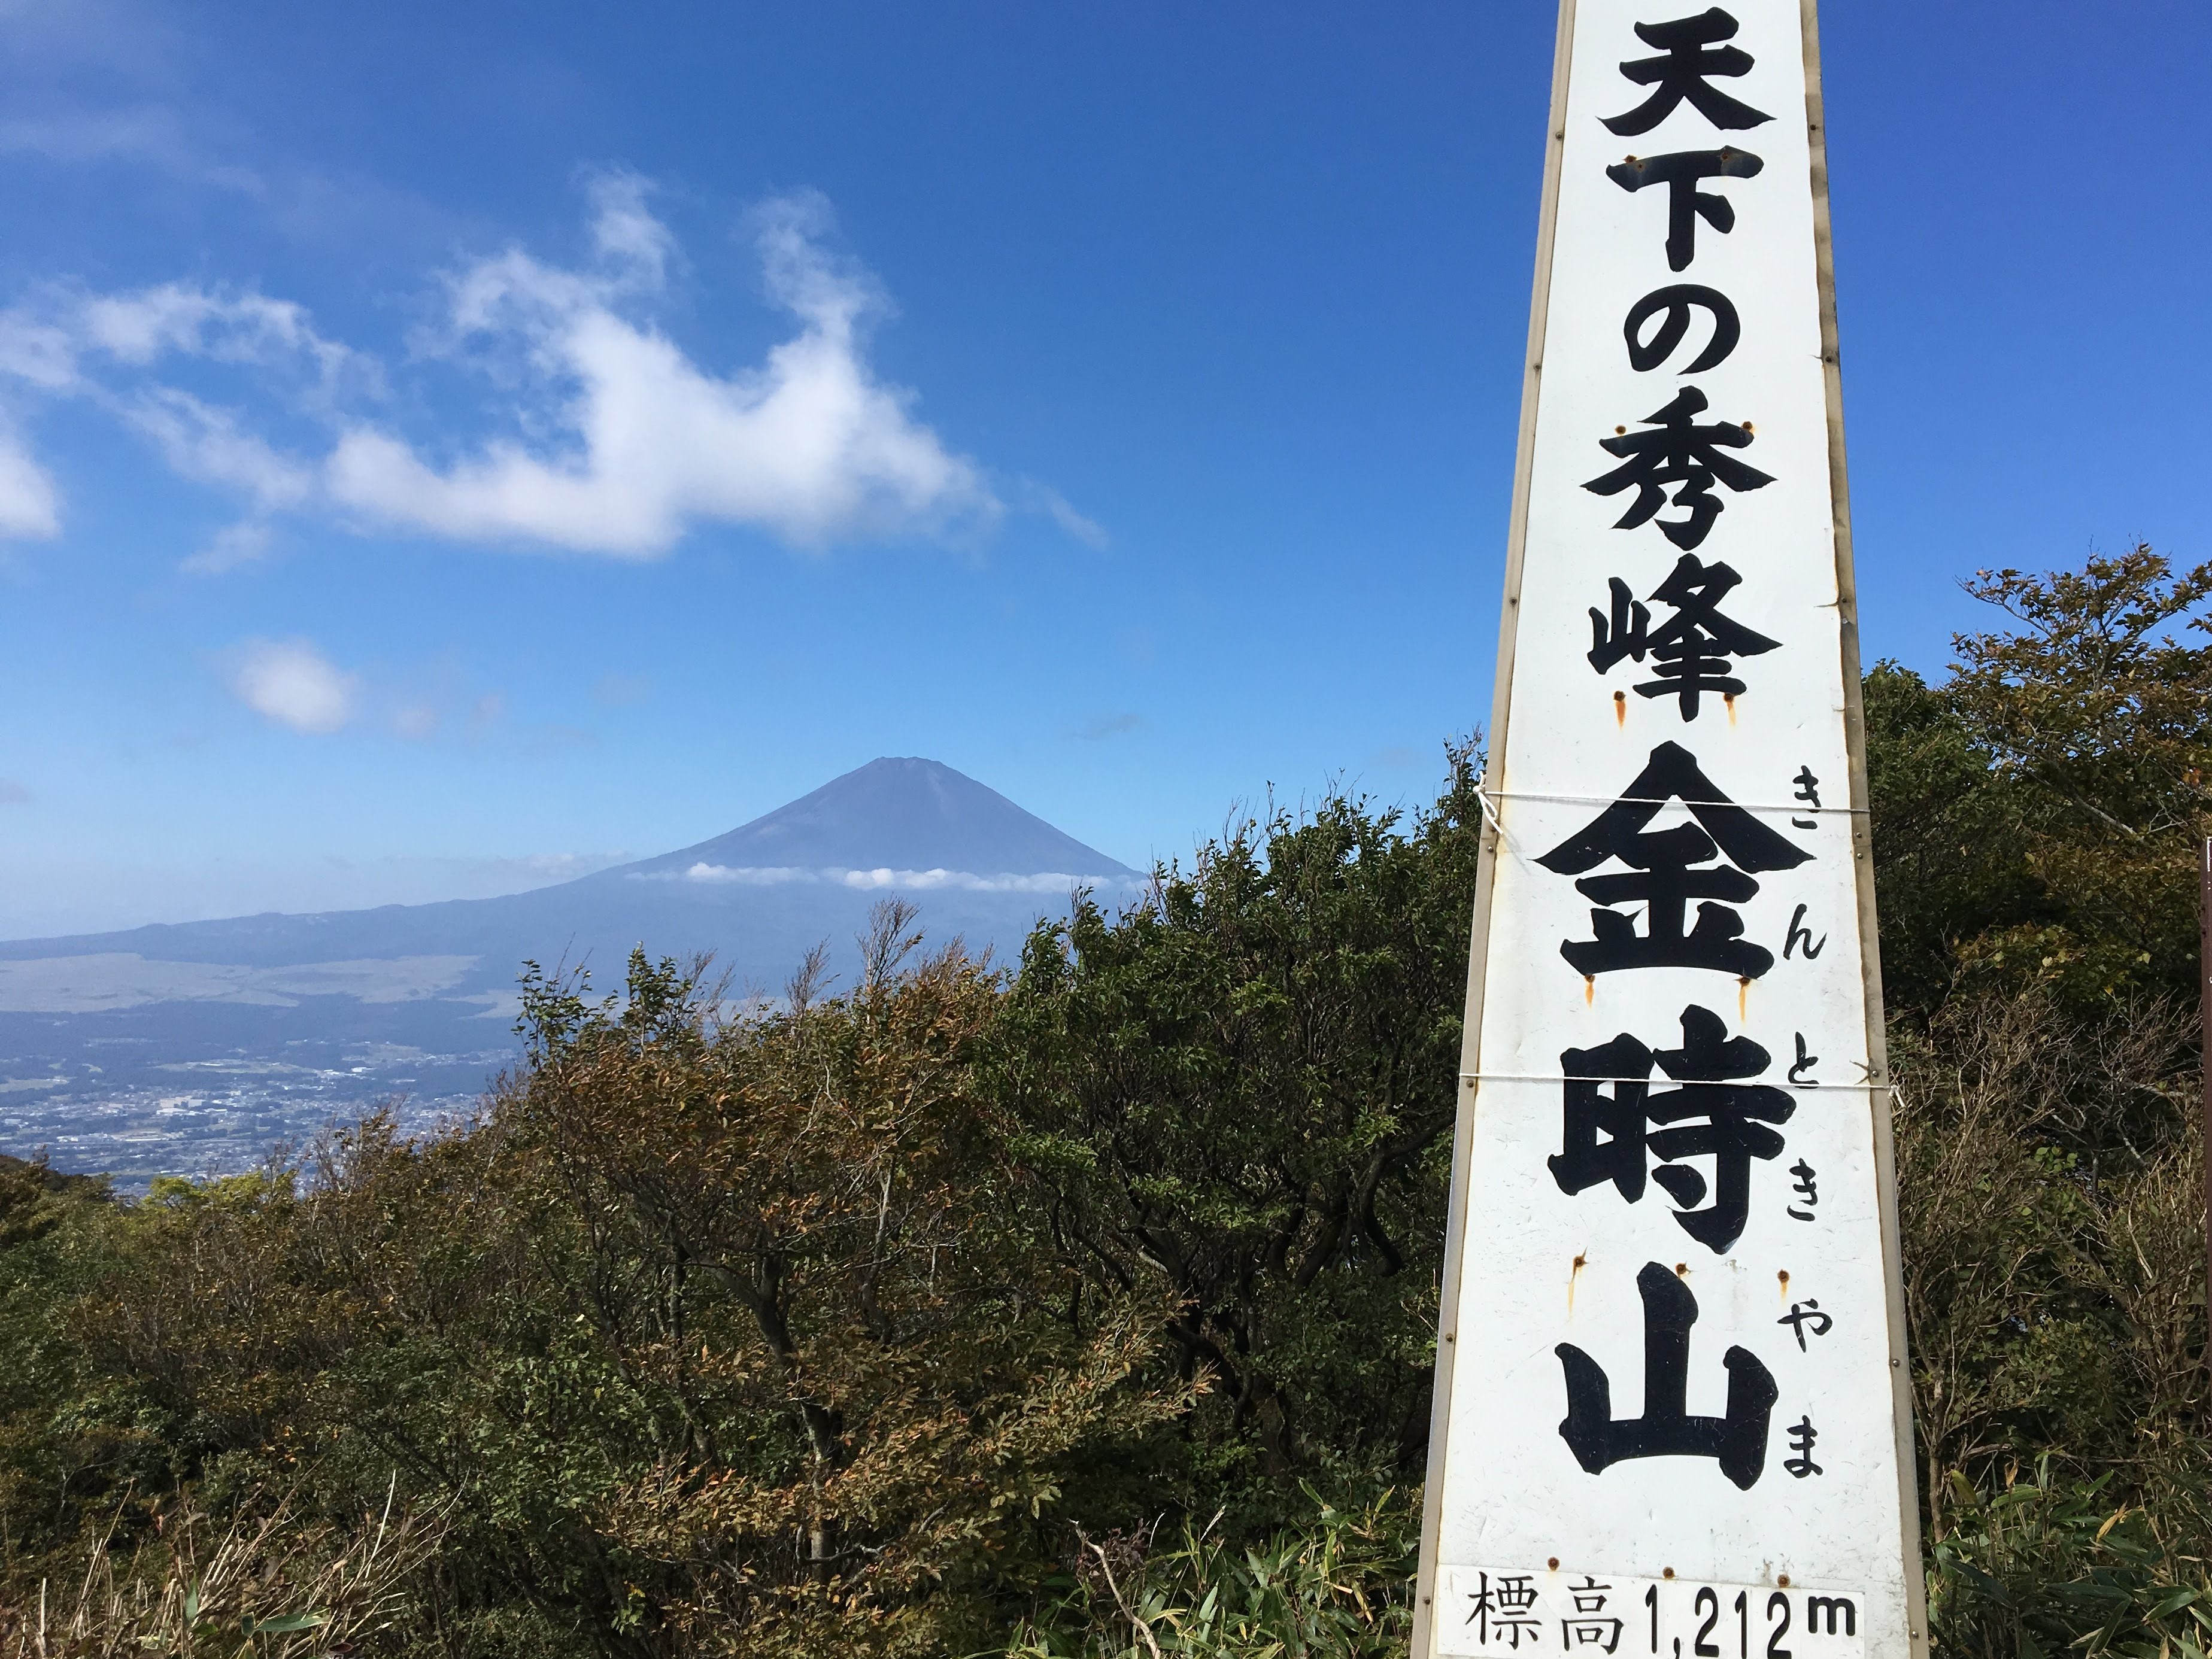 金時山登山 駐車場から山頂まで 頂上では富士山の絶景がみえる ヒデくんのなんでもブログ